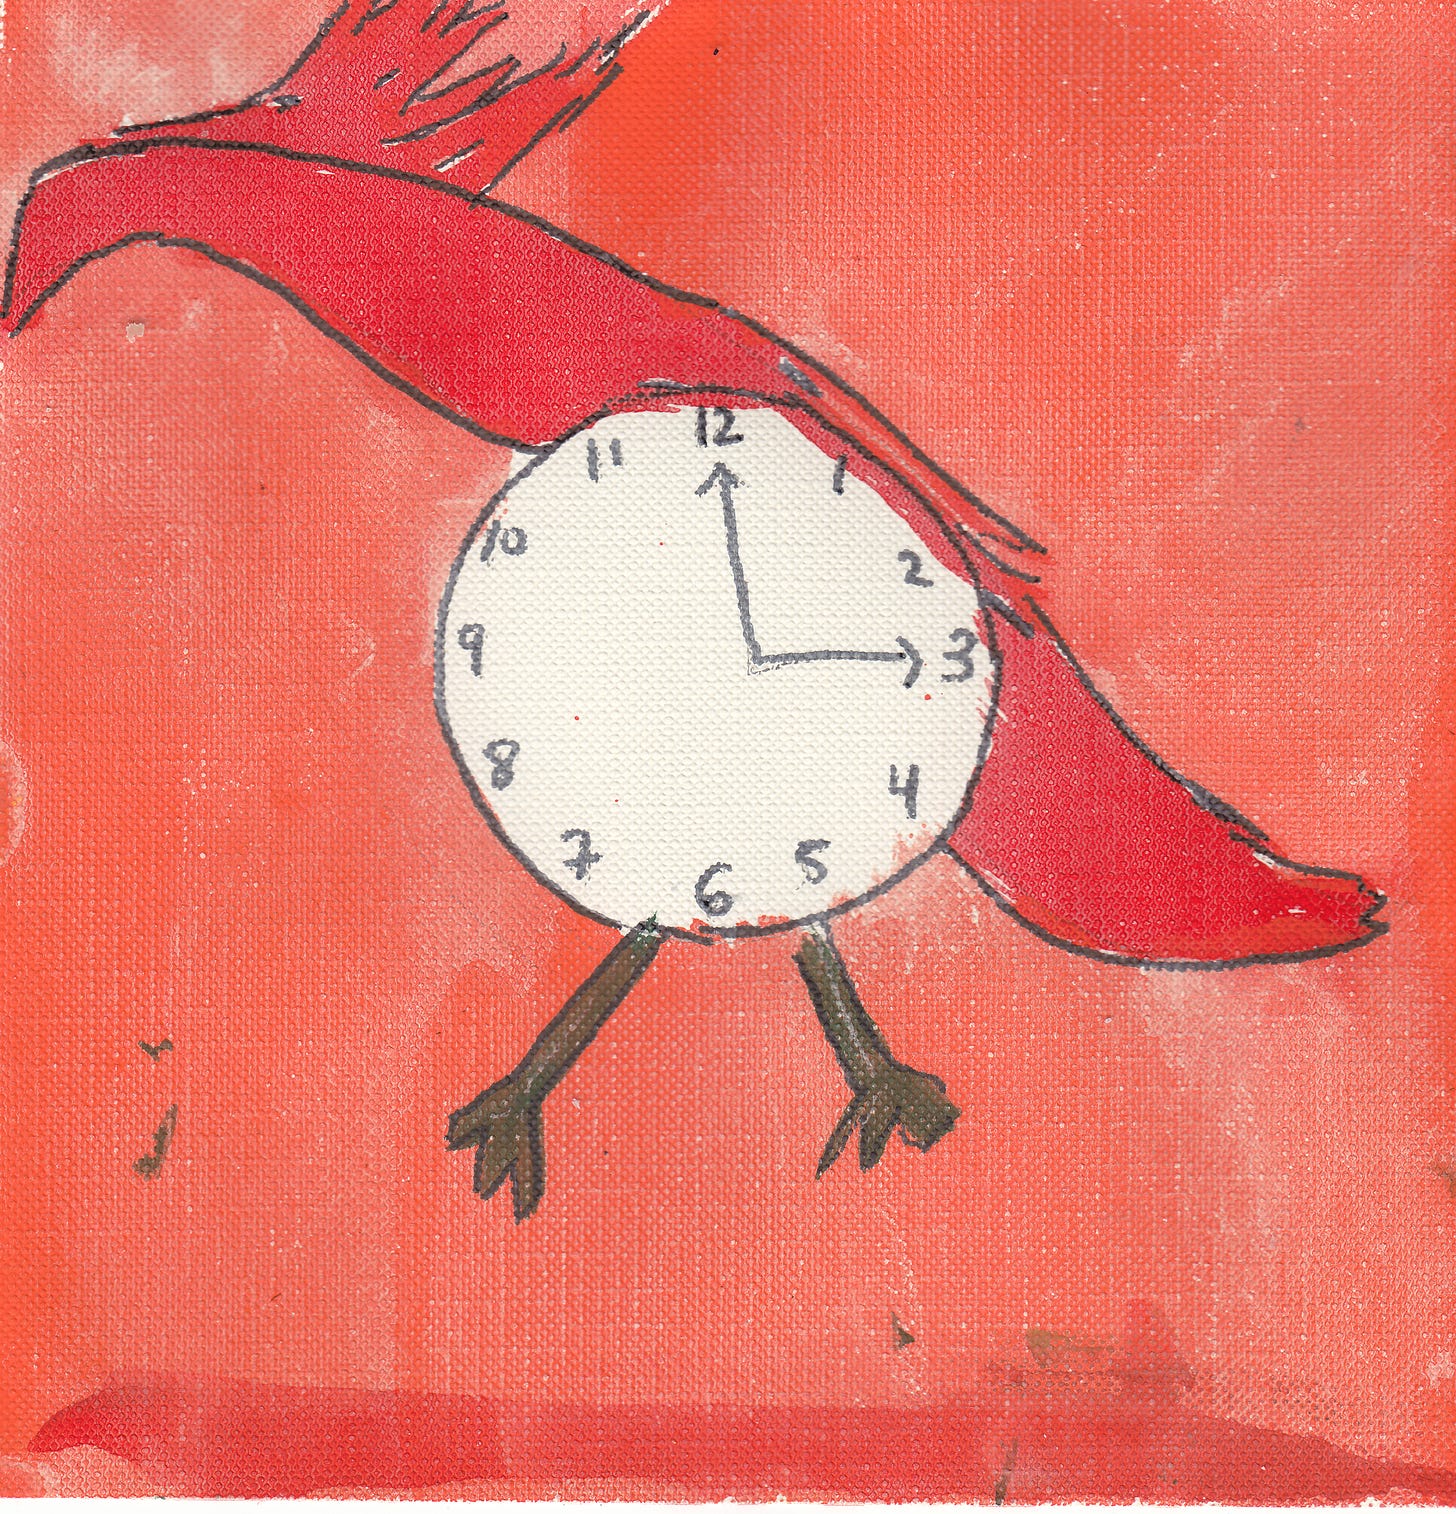 red bird with clock belly. orange background